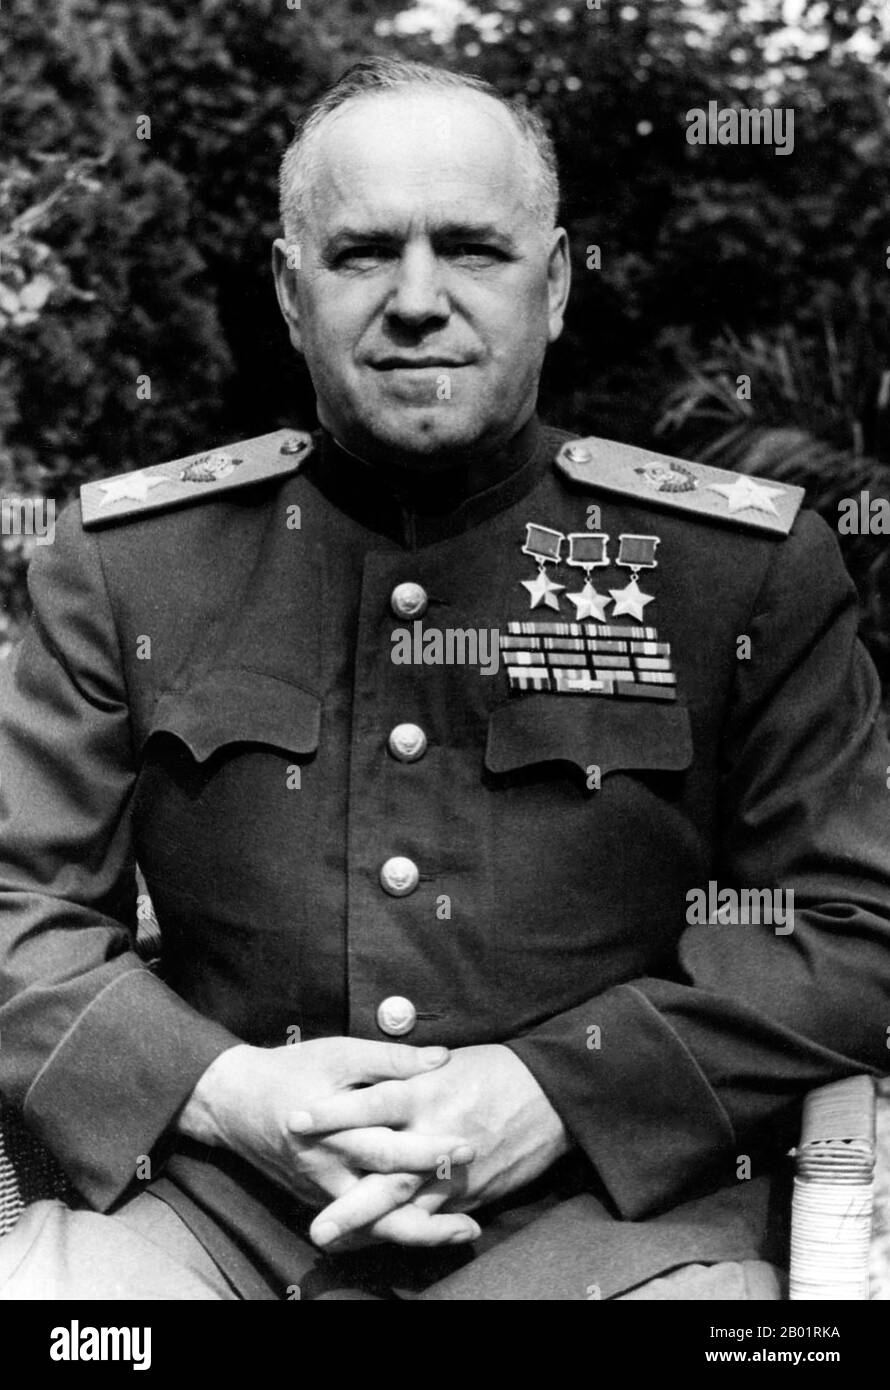 Russie : Maréchal Georgy Joukov (19 novembre 1896 - 18 juin 1974), victor de Khalkin Gol (1938), c. 1940s. Le maréchal de l'Union soviétique Georgy Konstantinovitch Joukov était un officier de carrière russe dans l'Armée rouge qui, au cours de la Seconde Guerre mondiale, a joué un rôle central dans la conduite de l'Armée rouge à travers une grande partie de l'Europe de l'est pour libérer l'Union soviétique et d'autres nations de l'occupation des puissances de l'axe et conquérir la capitale allemande, Berlin. Il est le général le plus décoré de l'histoire de la Russie et de l'Union soviétique. Banque D'Images